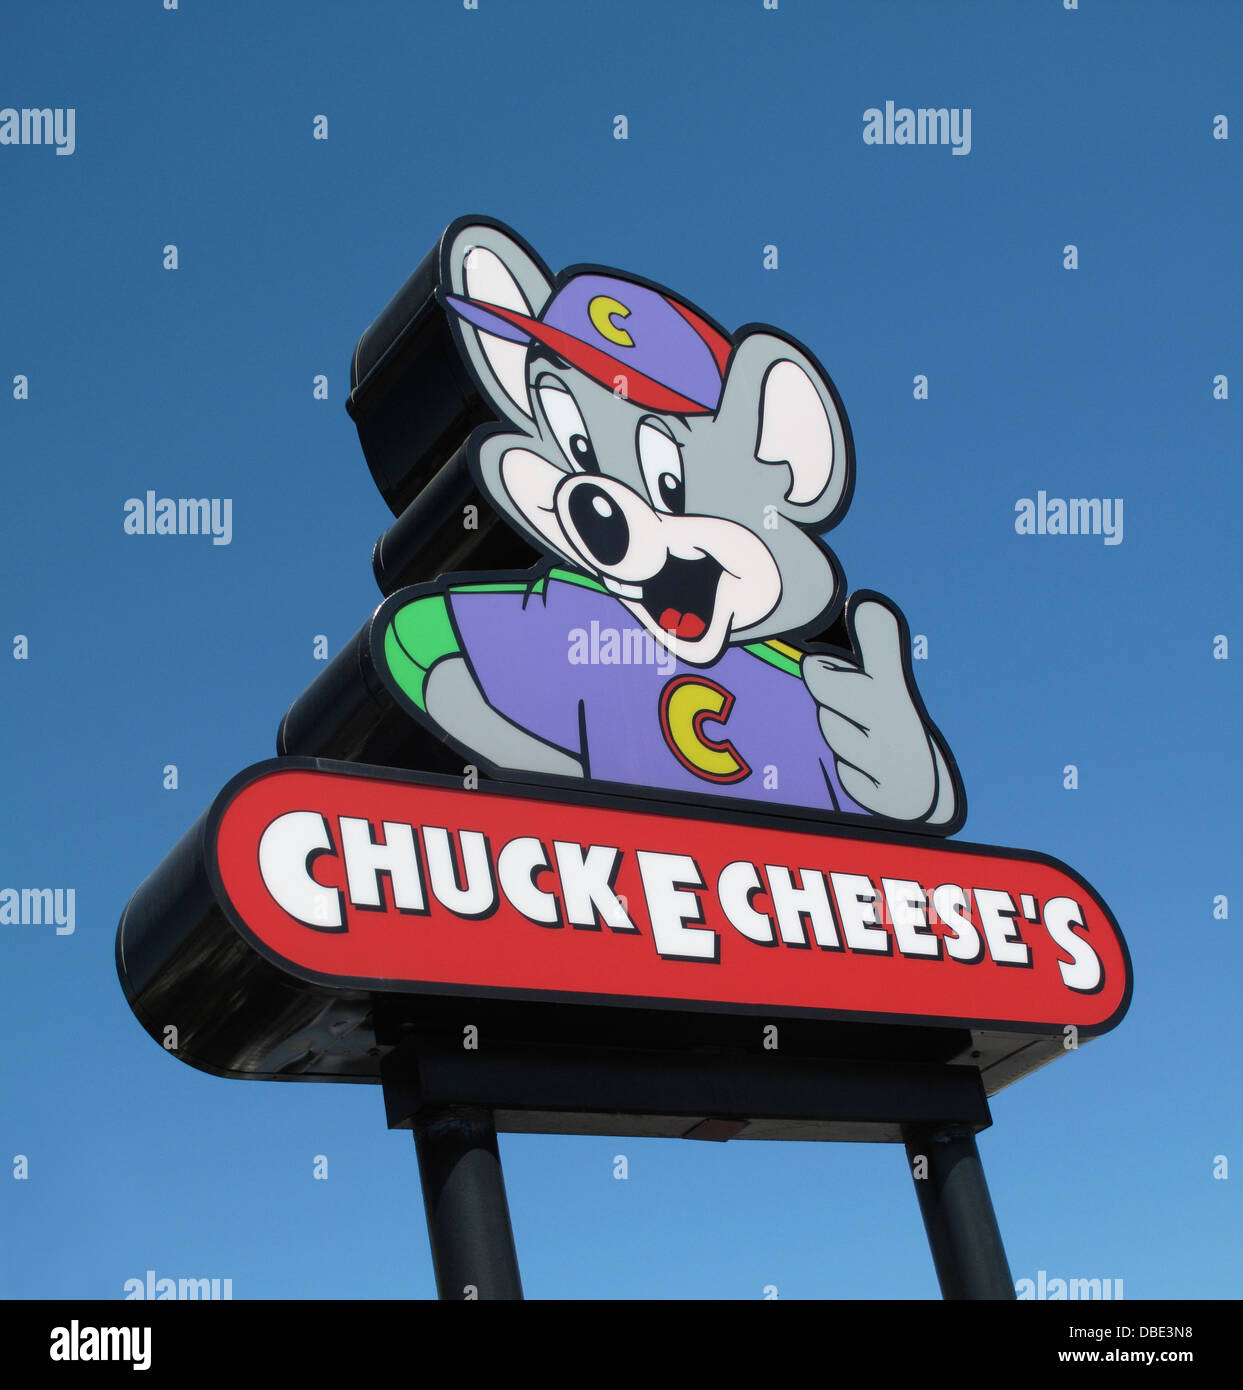 Chuck E Cheese's family entertainment center sign in San Jose, California Stock Photo